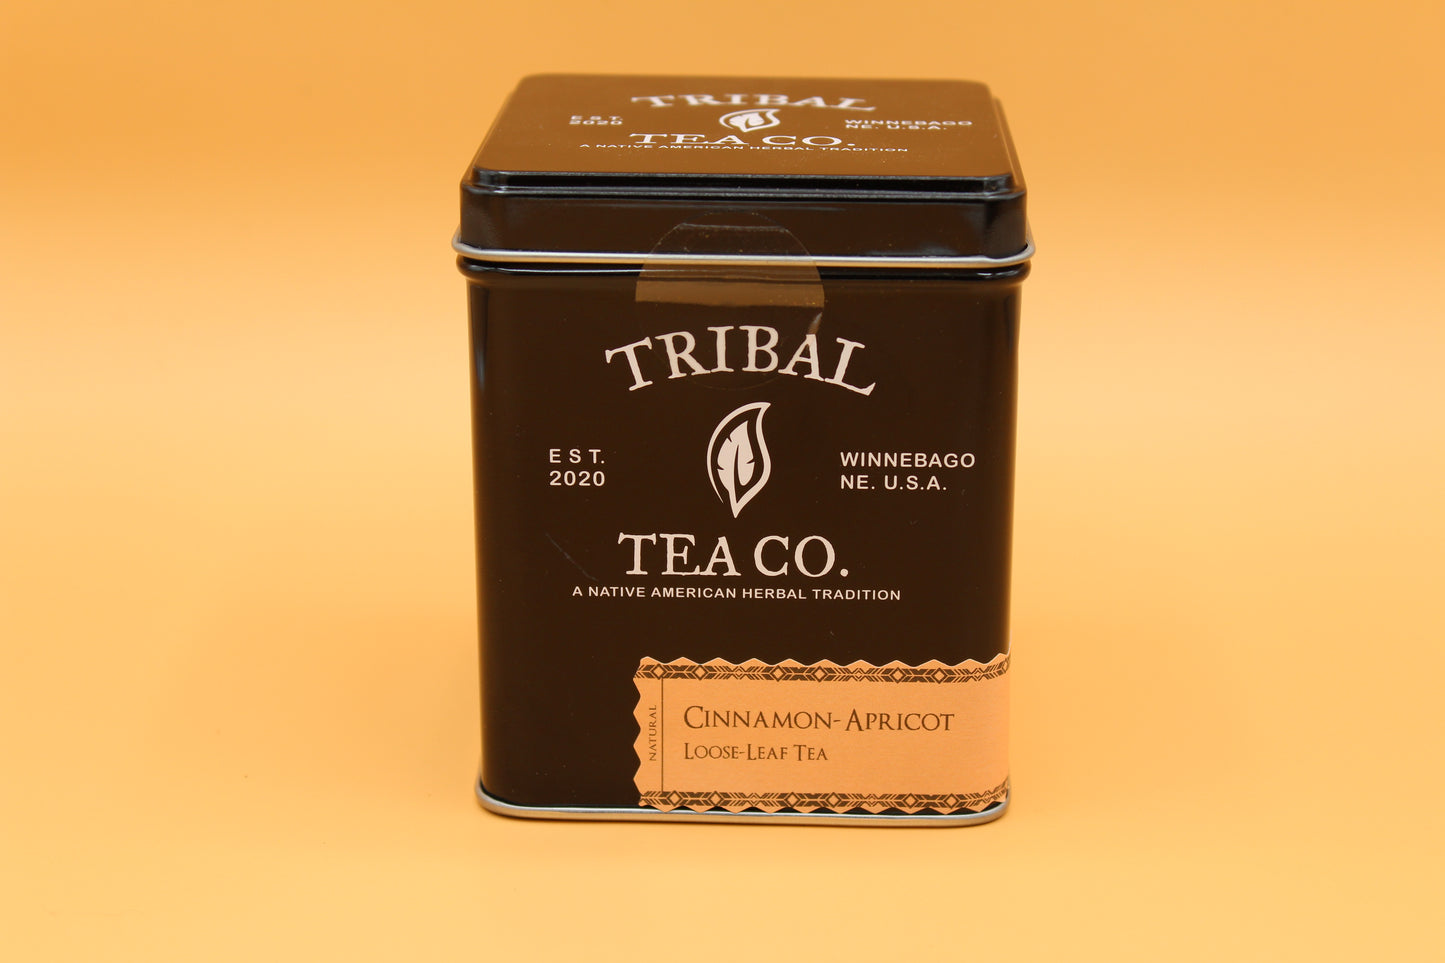 Cinnamon-Apricot Herbal Tea (Loose-Leaf)